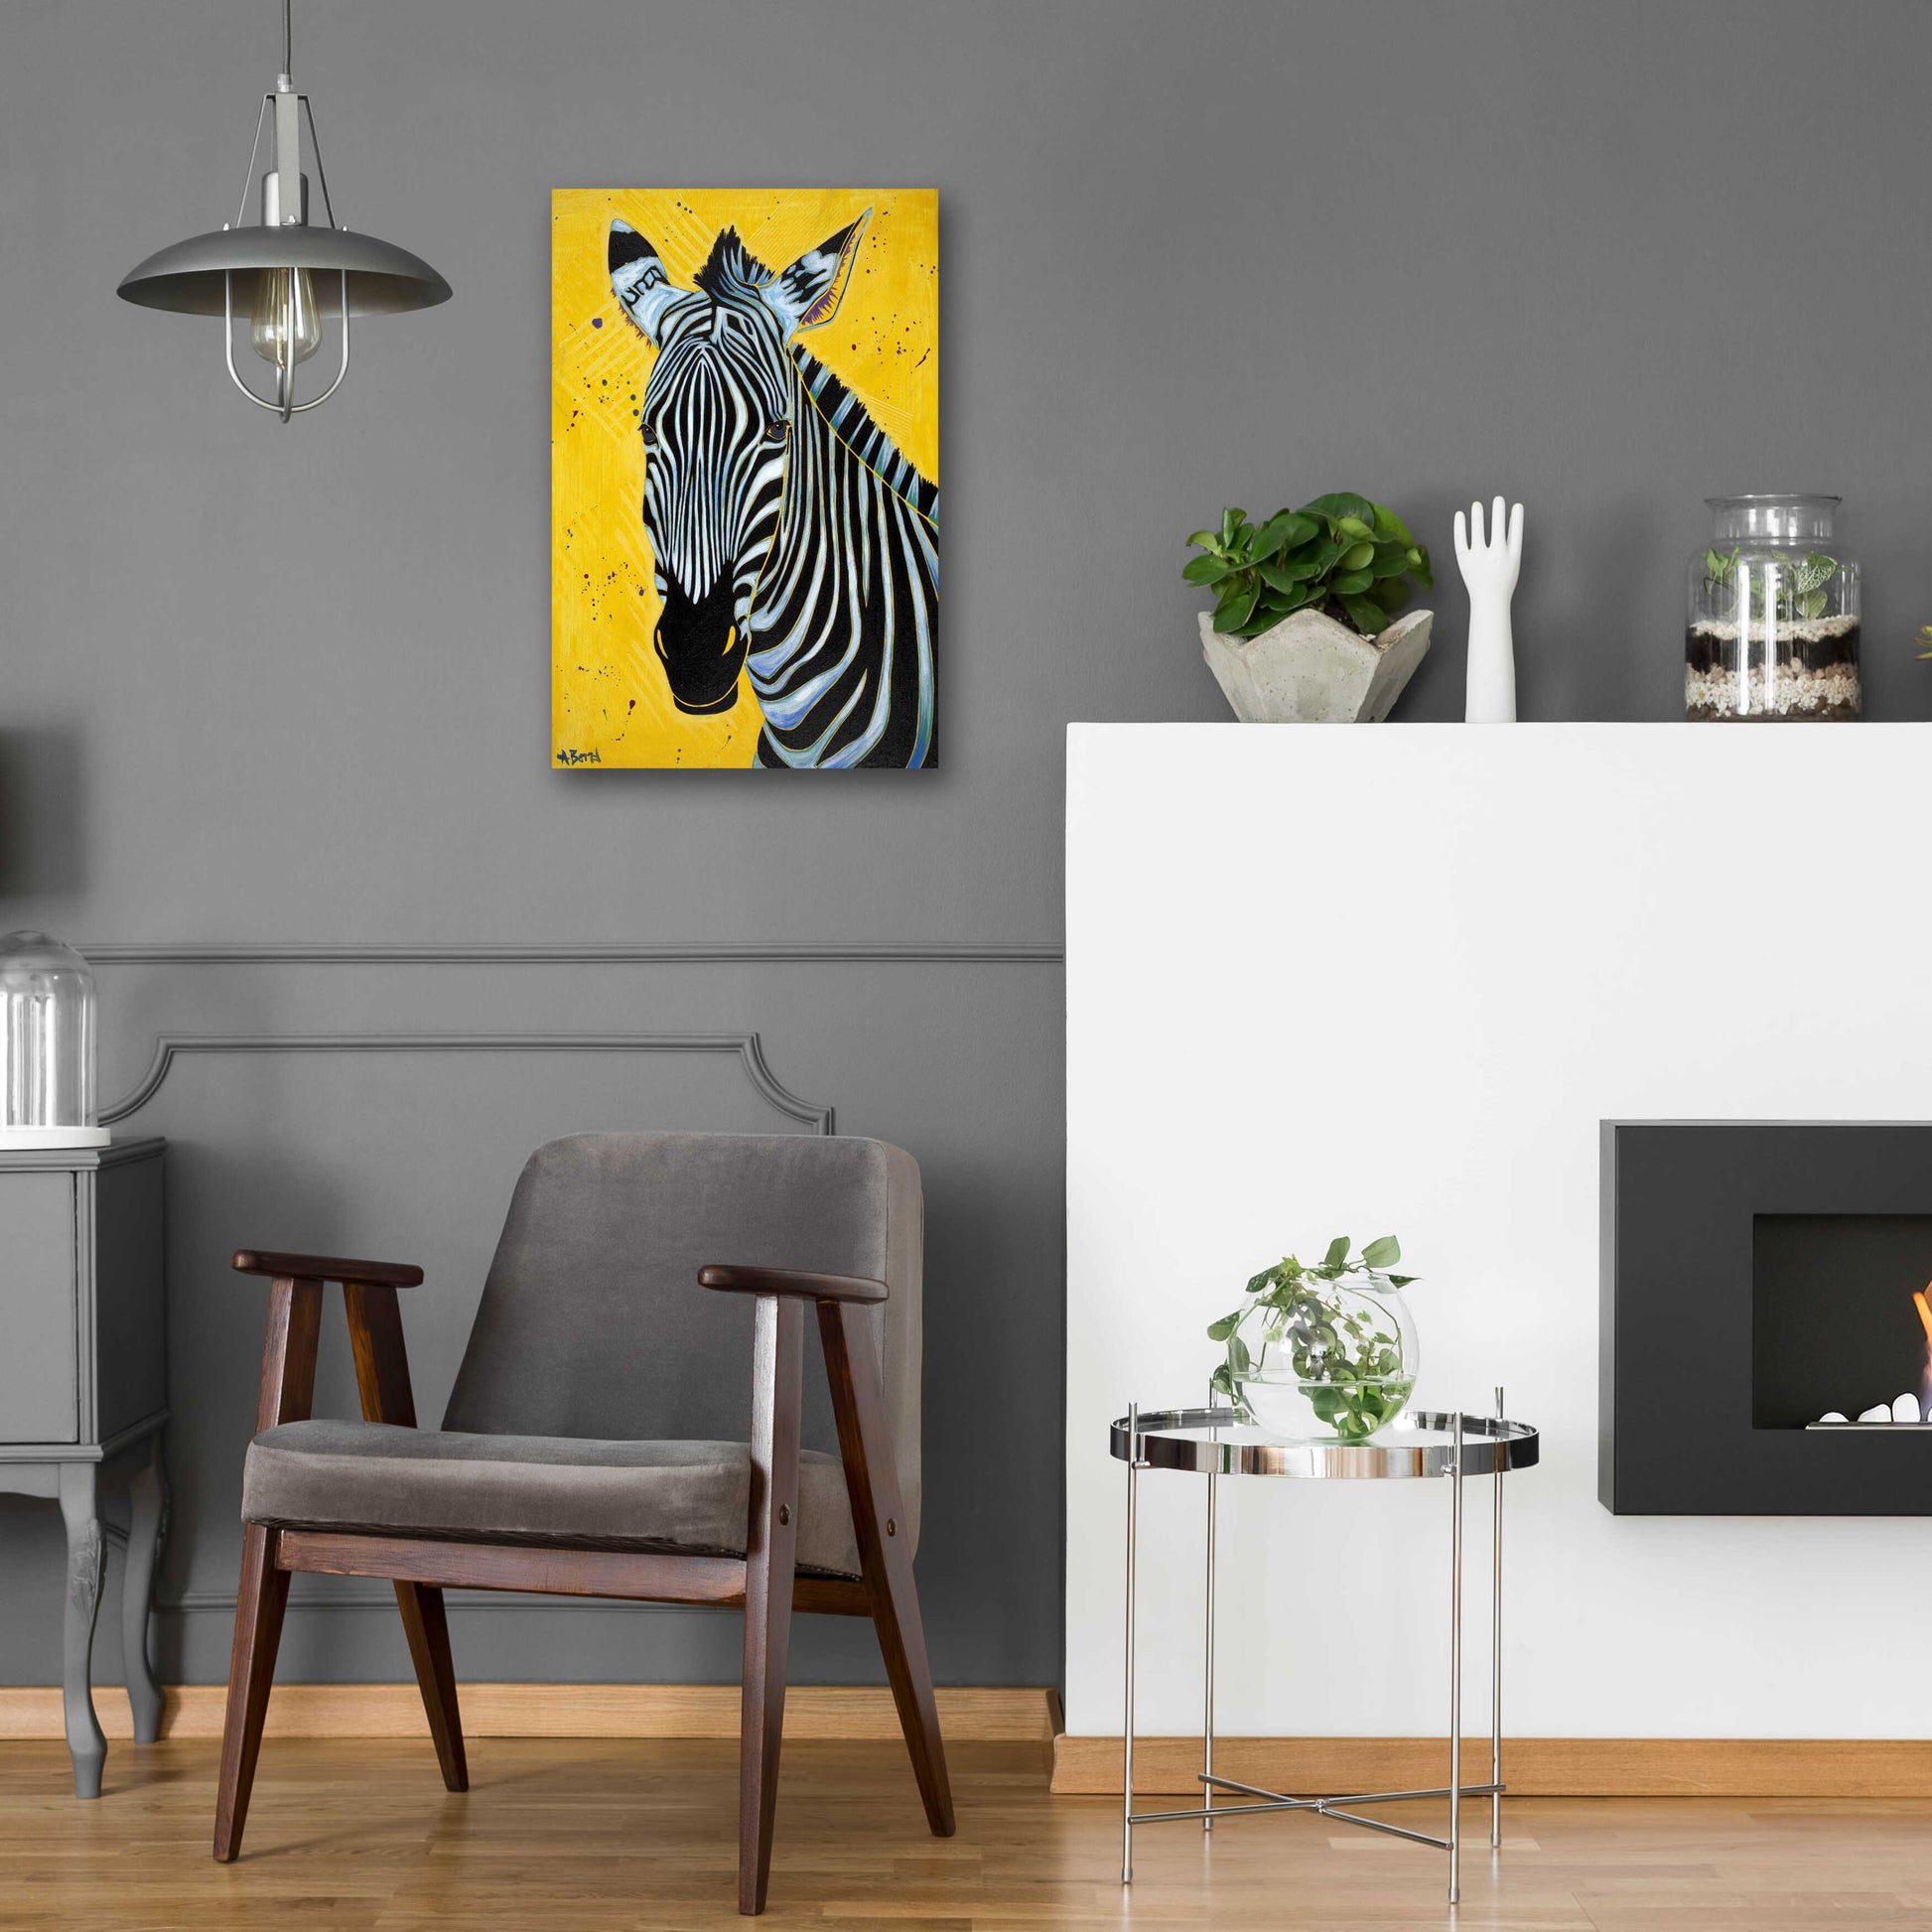 Epic Art 'Zebra' by Angela Bond Acrylic Glass Wall Art,16x24